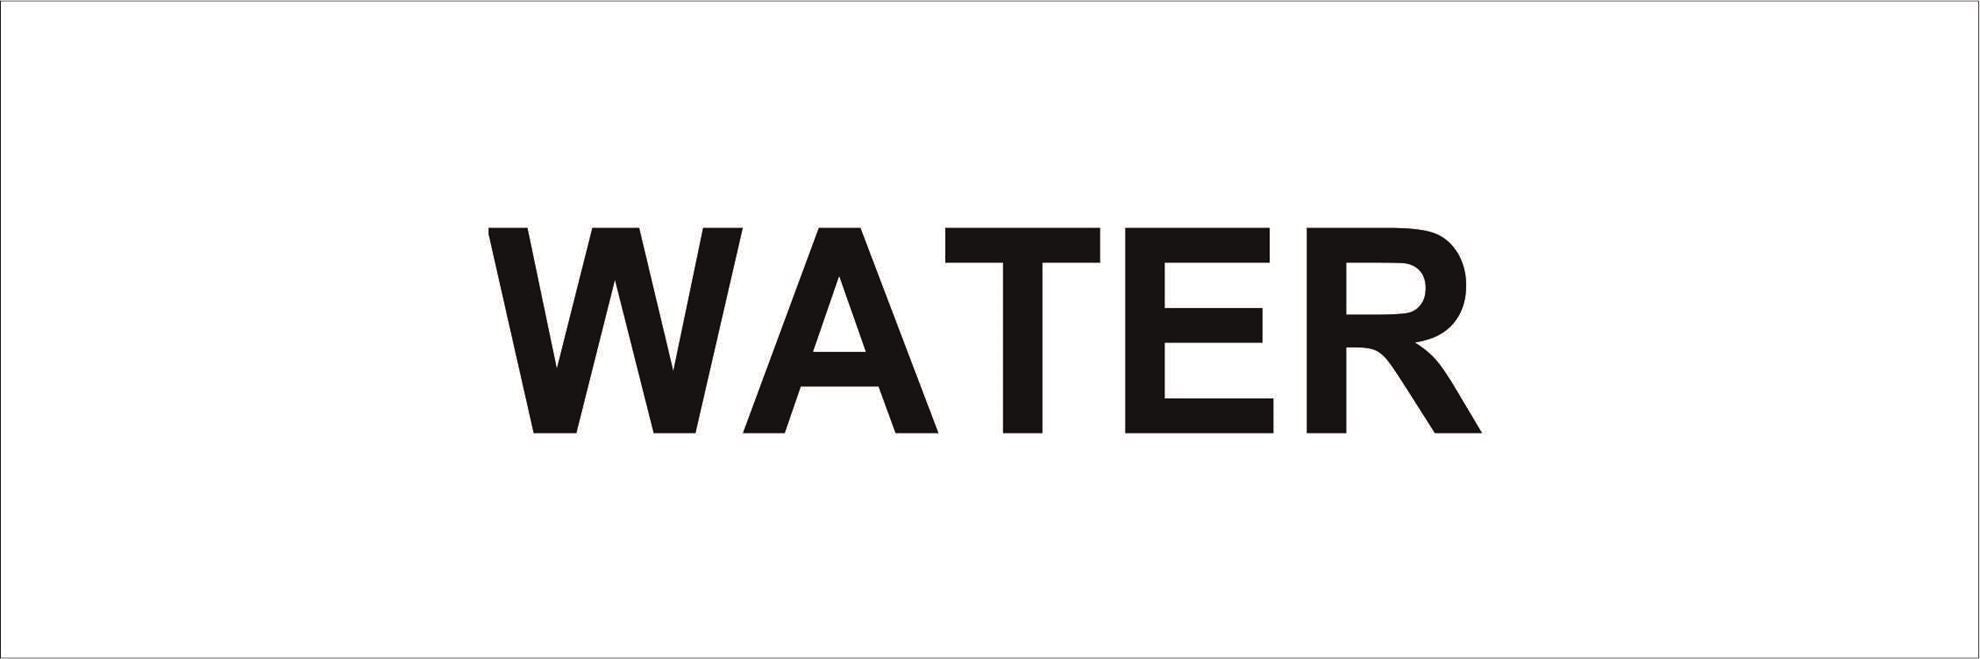 Pipeline Marking Label - WATER